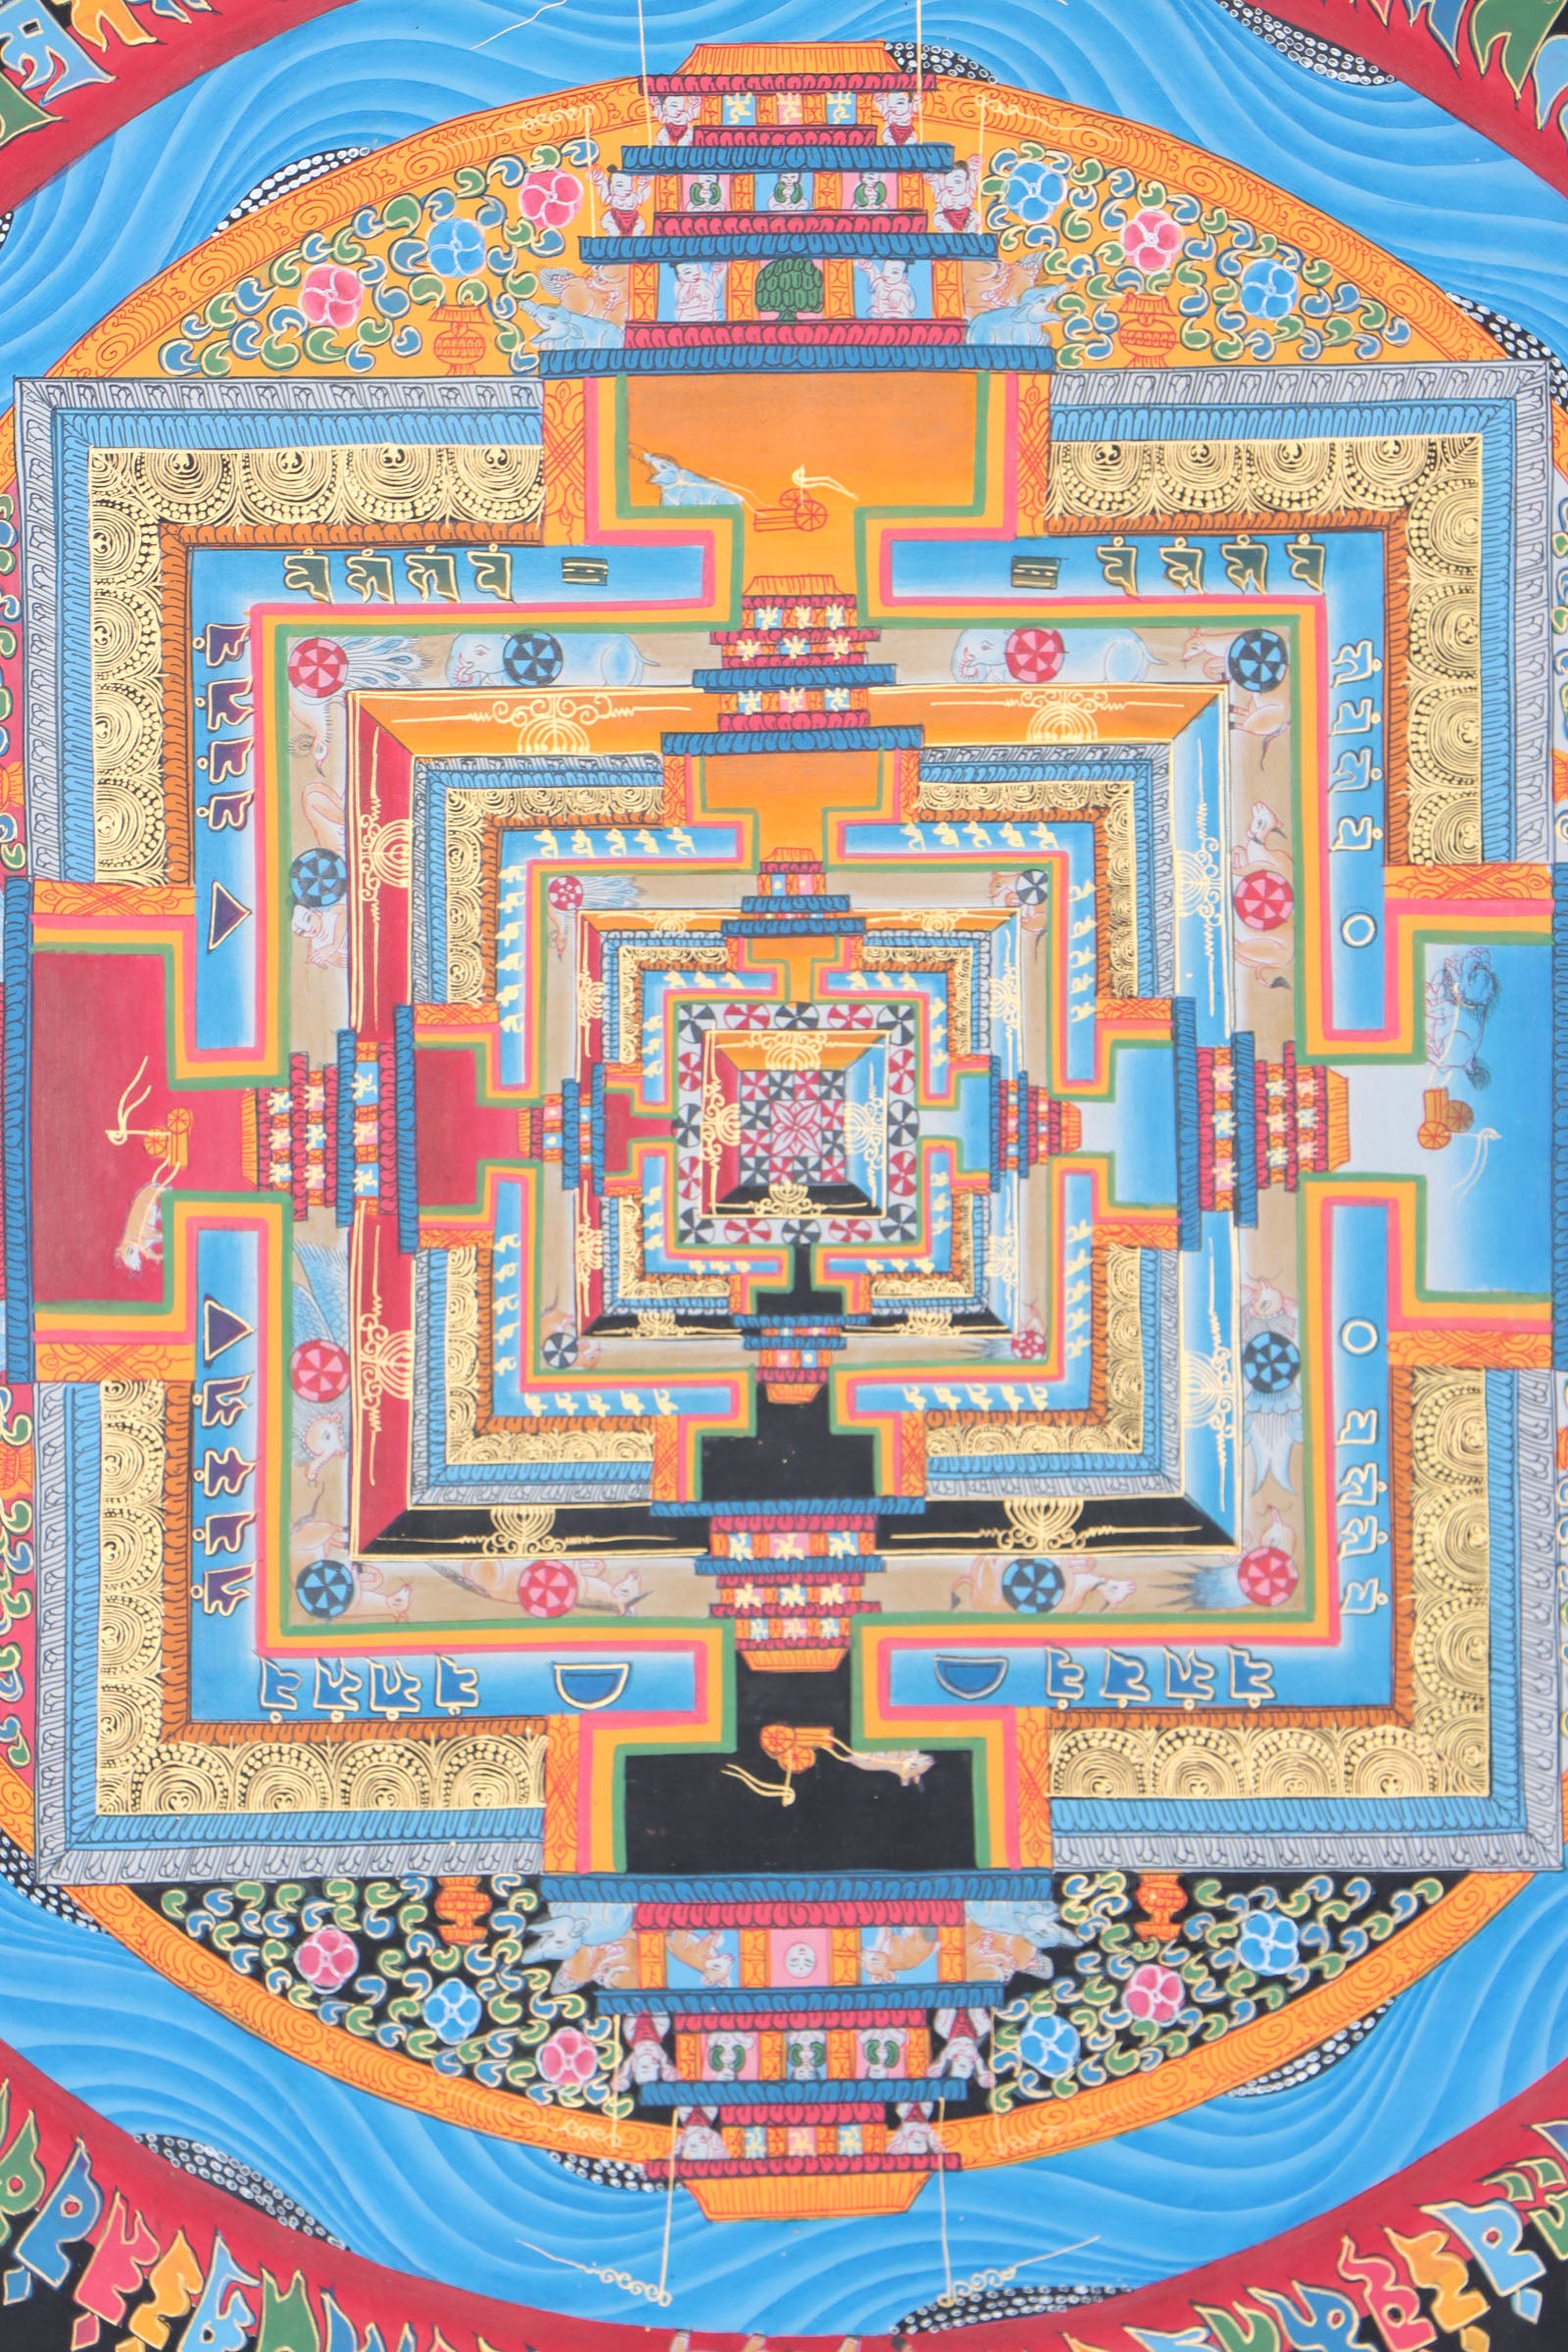 Kalachakra Mandala Thangka Painting for meditation and wall decor. 